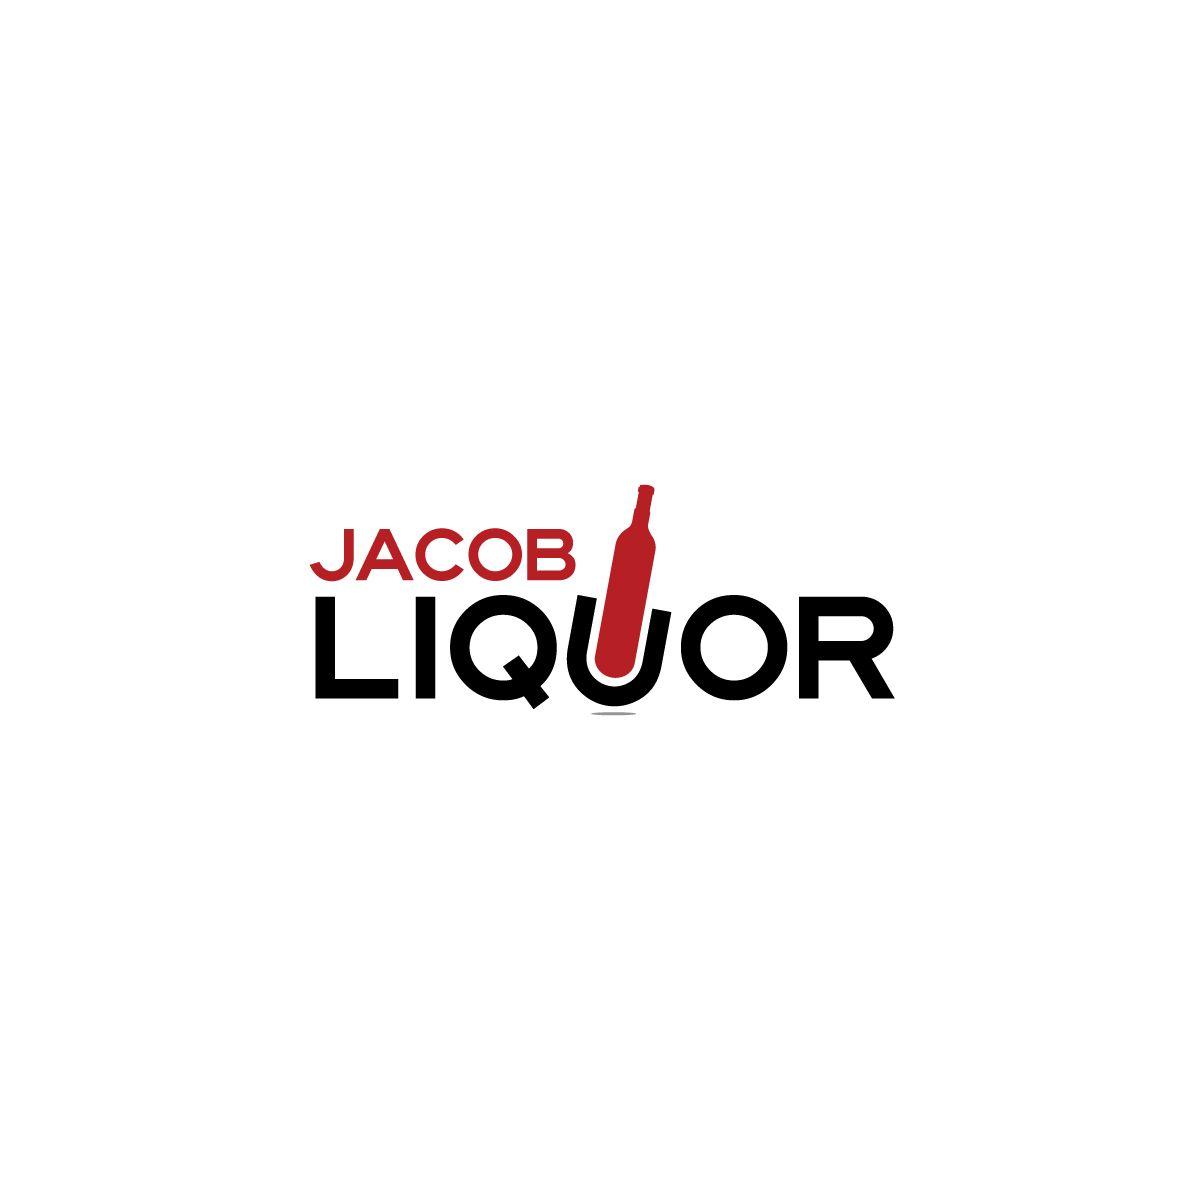 Liquor Logo - Modern, Elegant, Retail Logo Design for Jacob Liquor by Ana124 ...